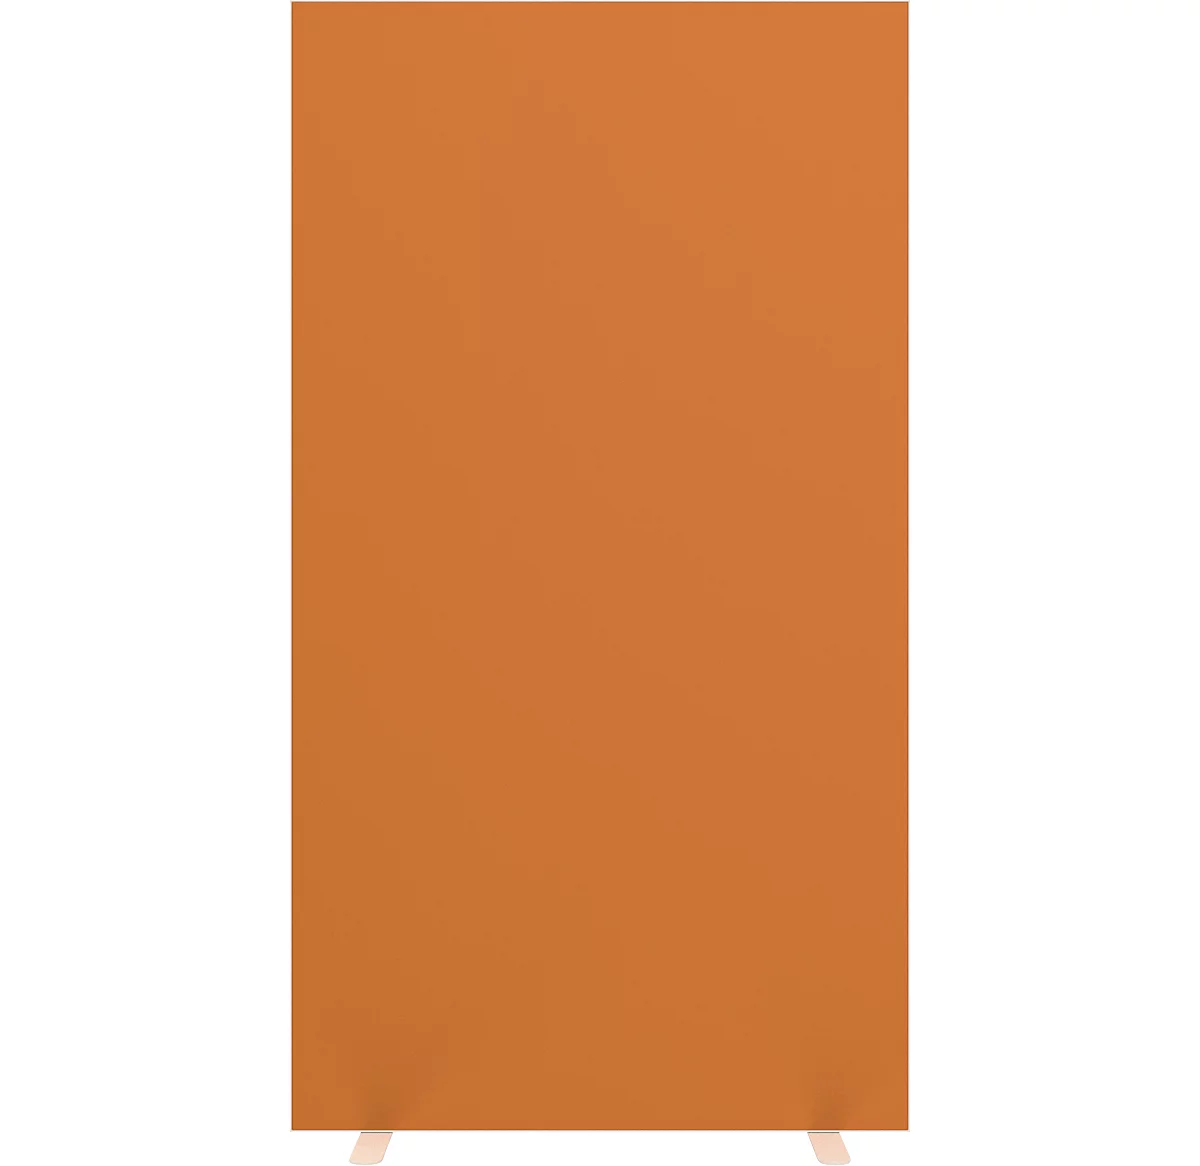 Design-Trennwand Paperflow, Stoffbespannung orange, schwer entflammbar gemäß DIN 4102 (B1), desinfektionsmittelbeständig, B 940 x T 390 x H 1740 mm